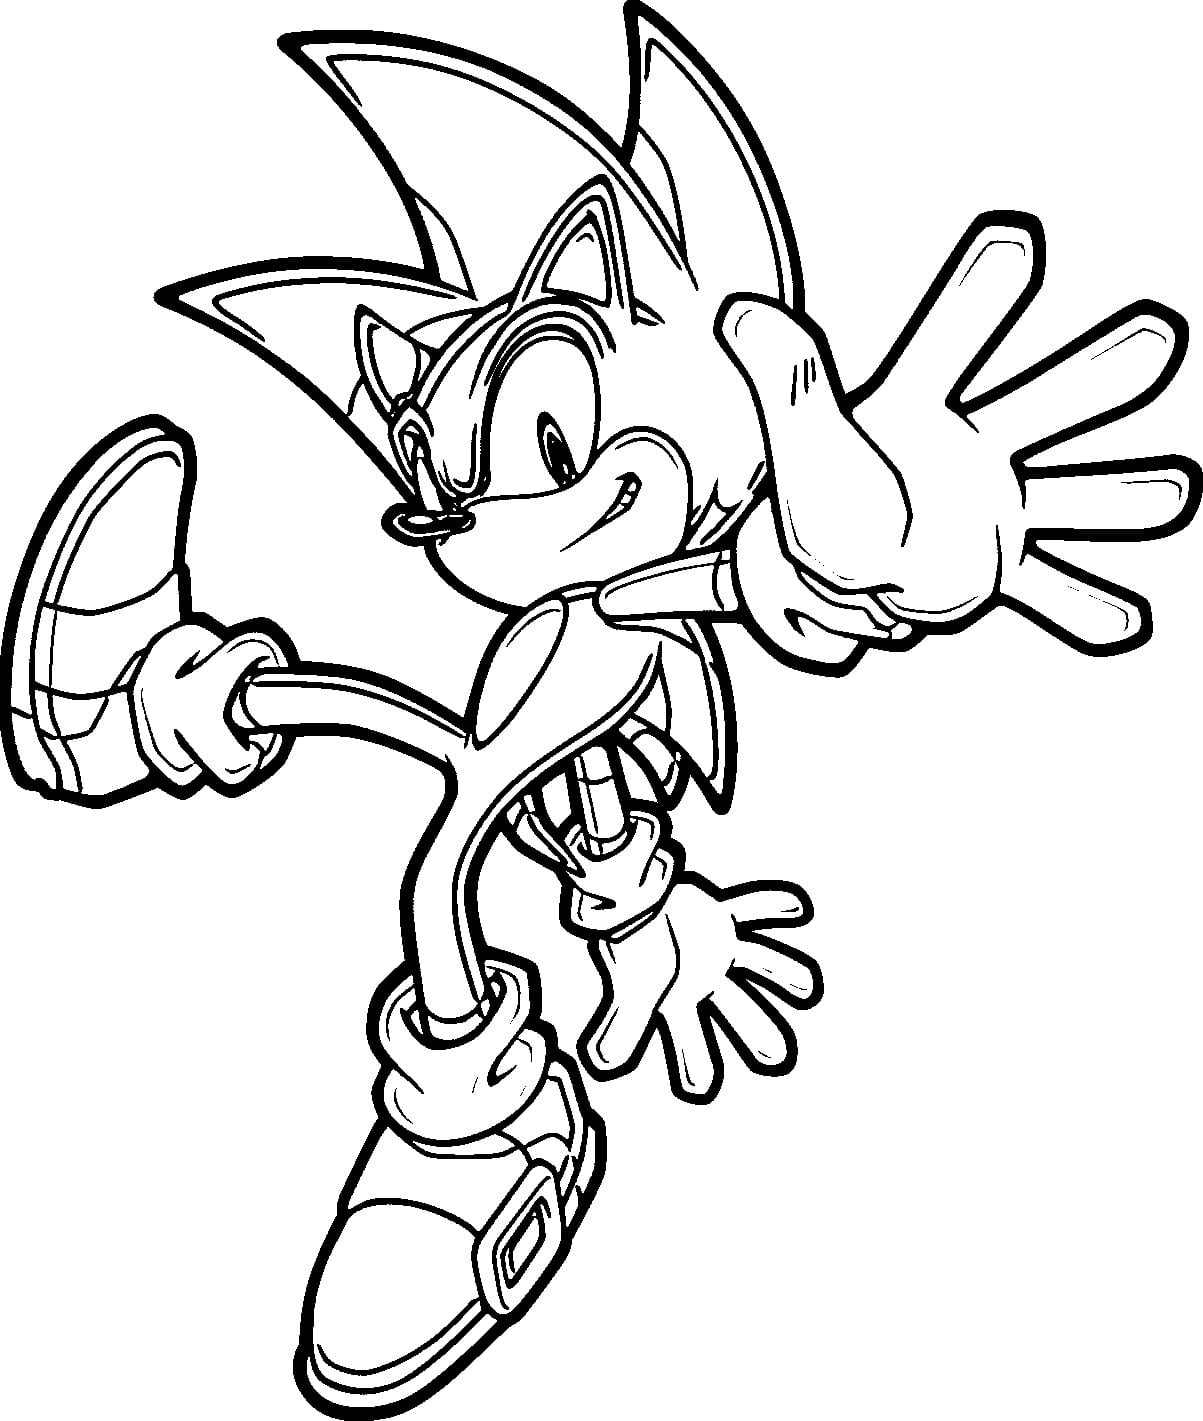 Sonic the Hedgehog página para colorear simple